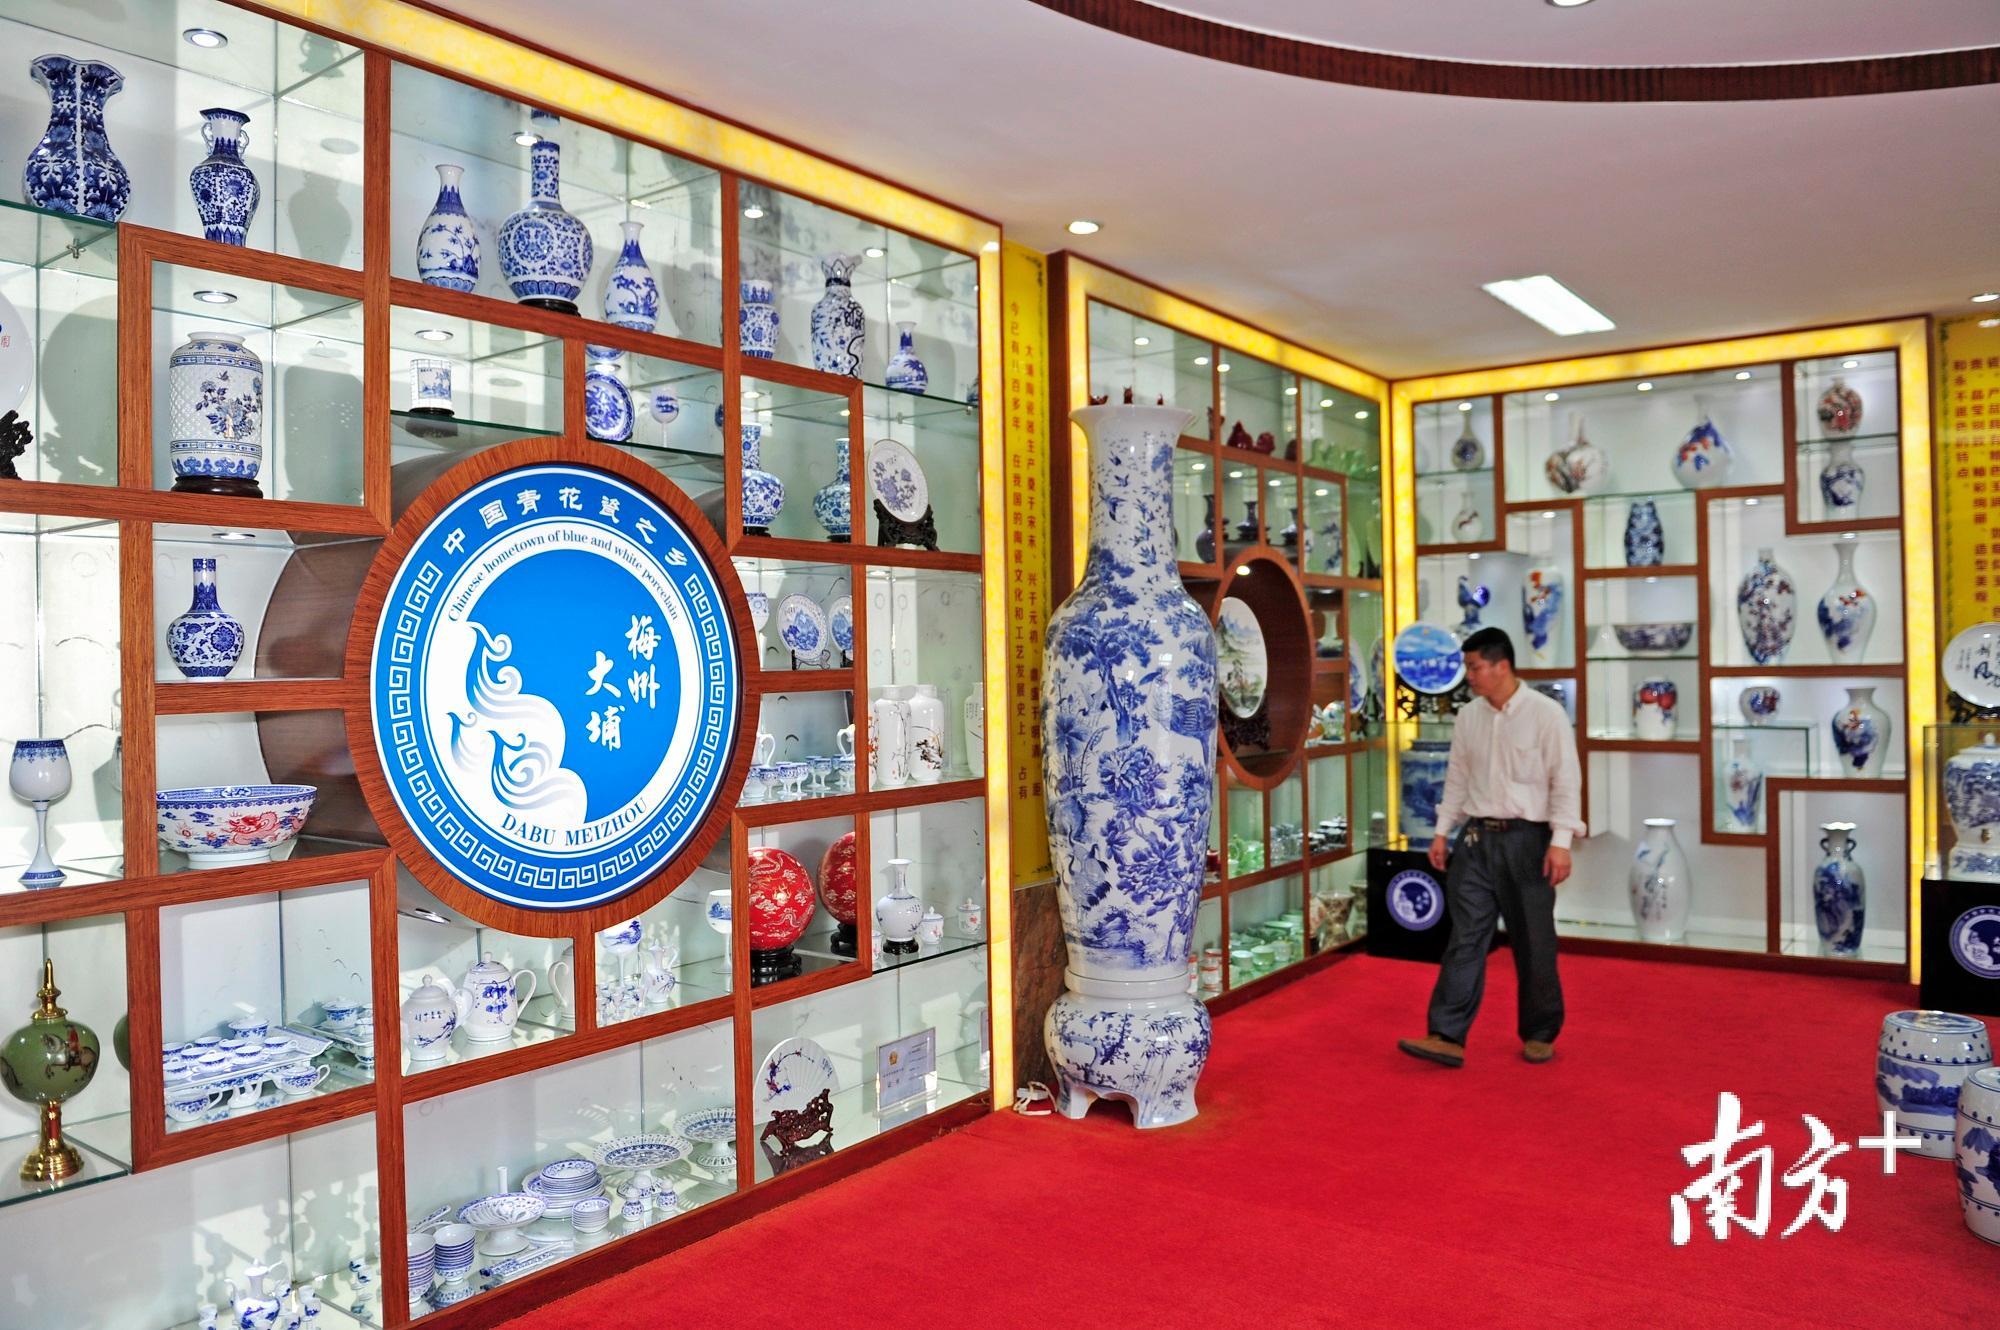 高陂镇的大埔县陶瓷产业管理办公室,展览着园区陶瓷企业生产的各种